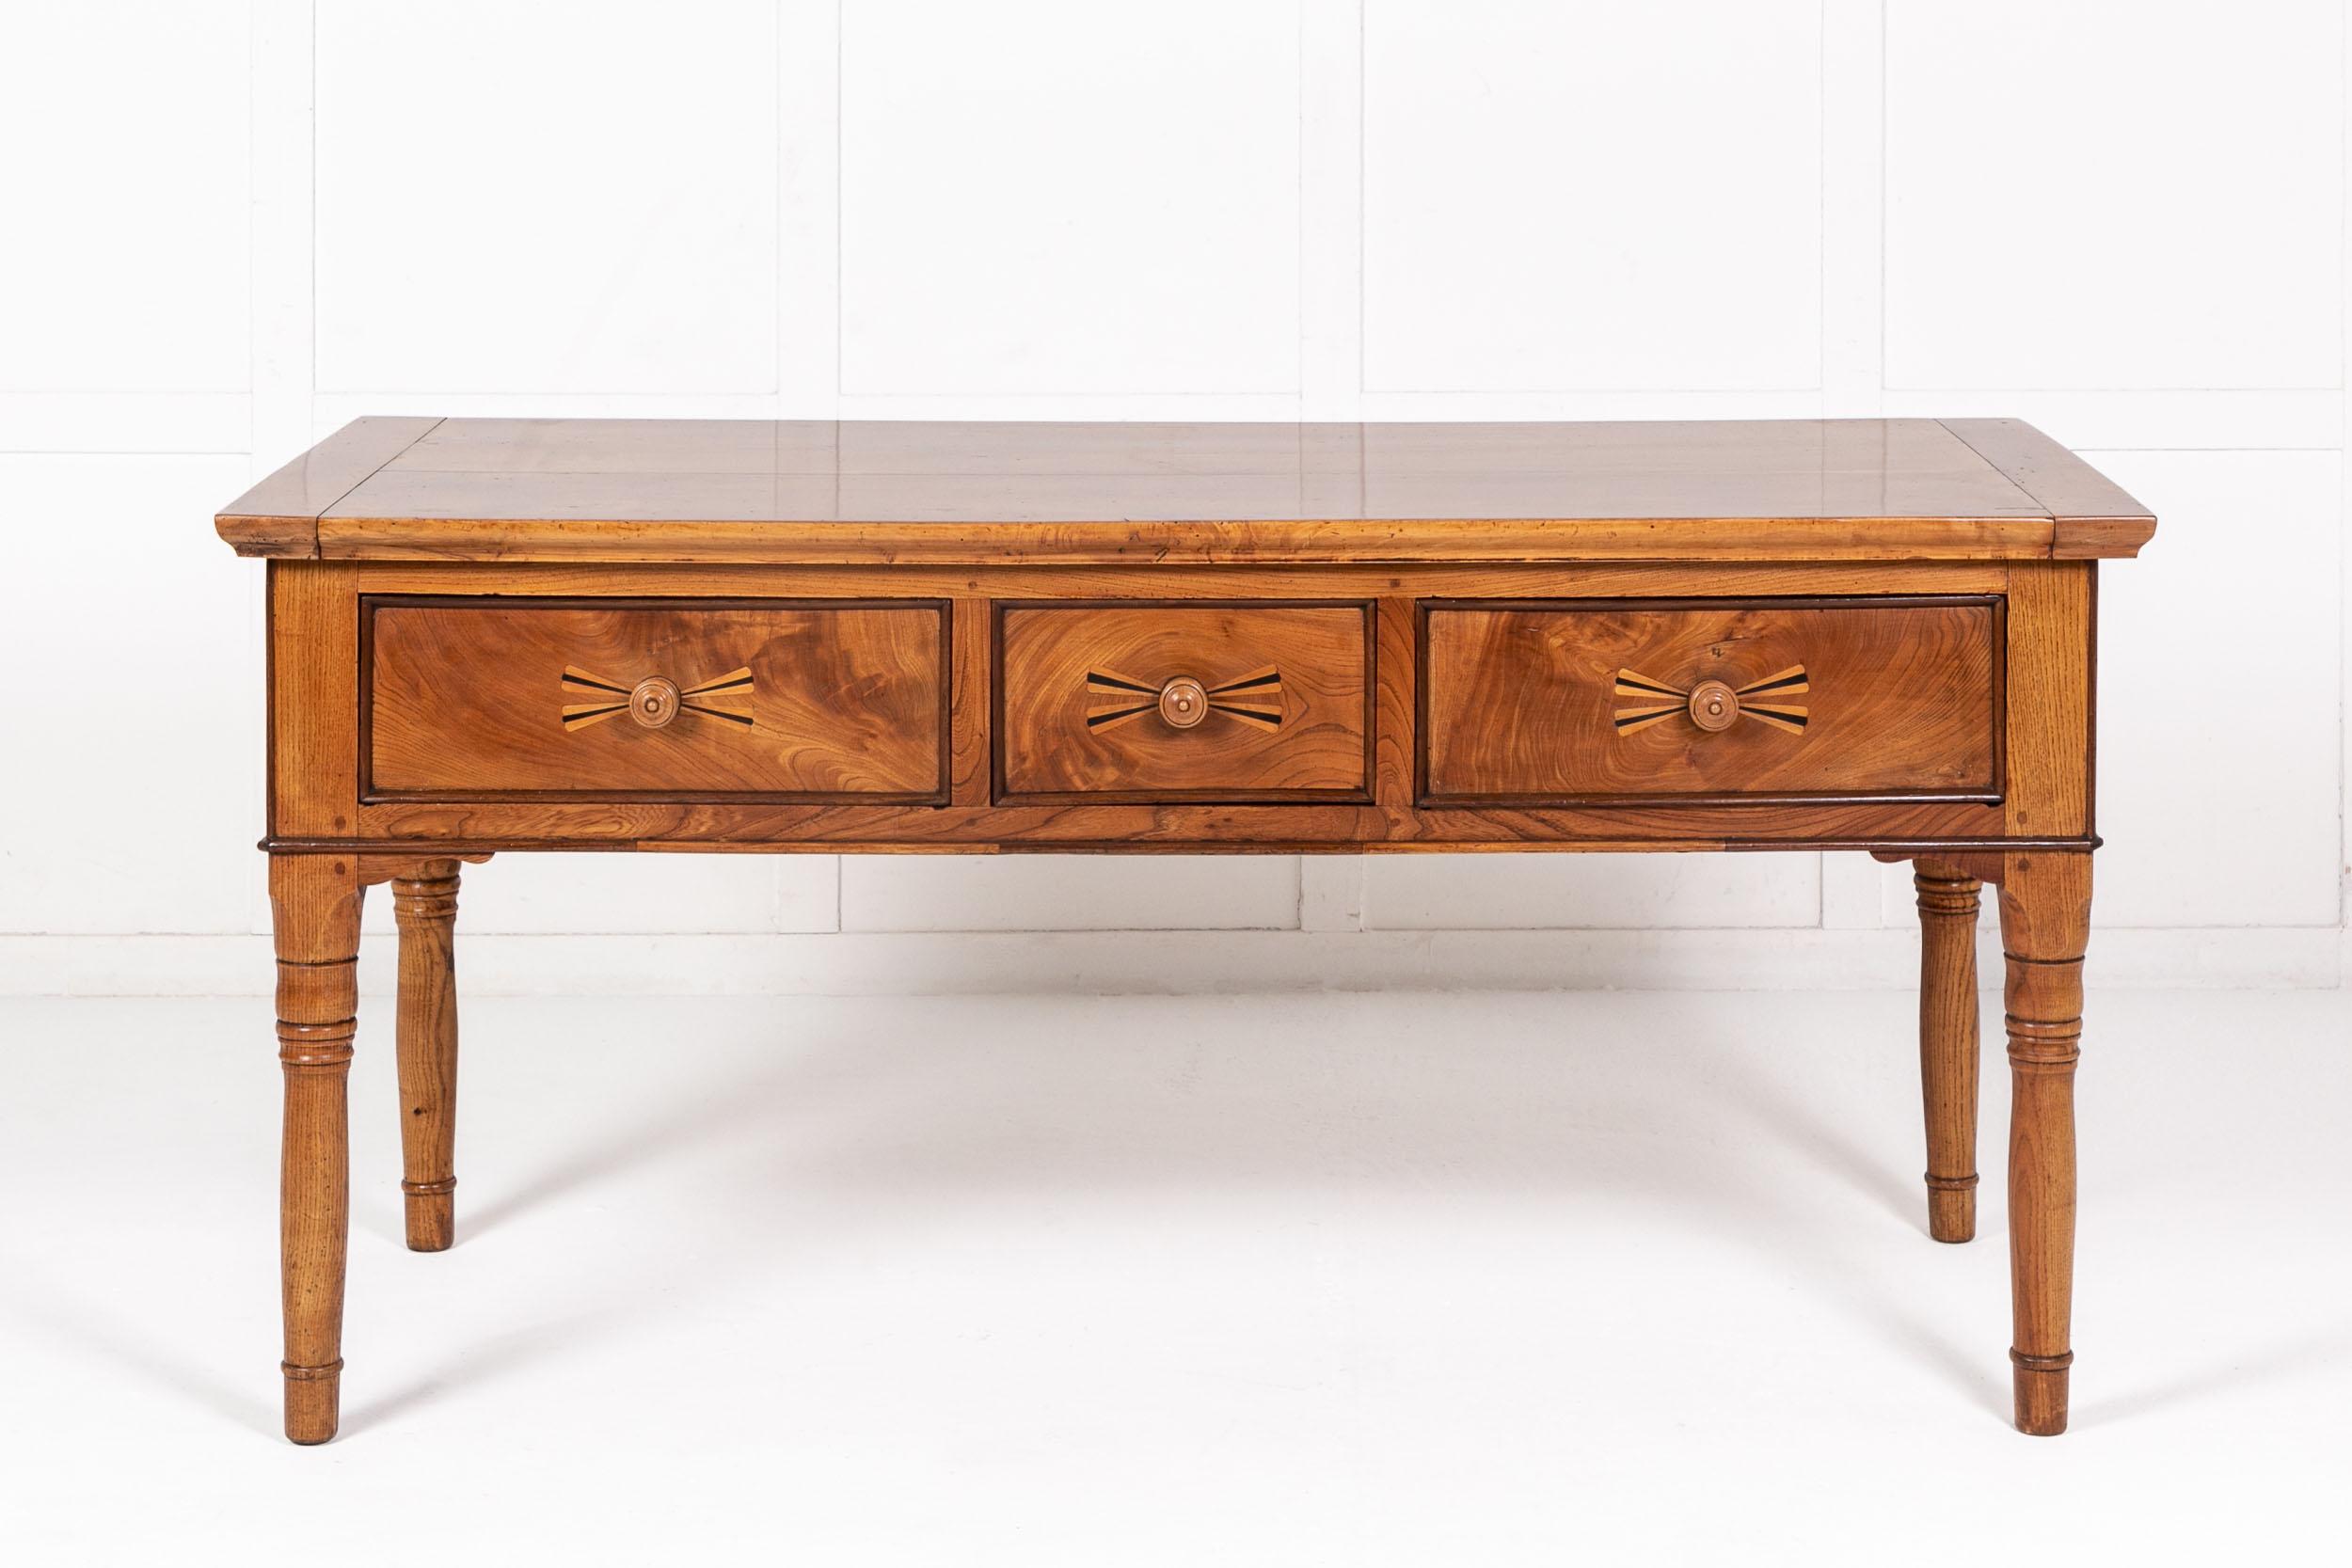 Französischer Tisch aus Ahorn und Ulme, 19. Jahrhundert. Mit zwei Brettern an den Enden, die mit Stollen versehen sind. Darunter drei tiefe Schubladen mit zentralem Bandeffekt, mit Einlagen aus Ebenholz und Ulmenholz, mit gedrechselten Holzgriffen.